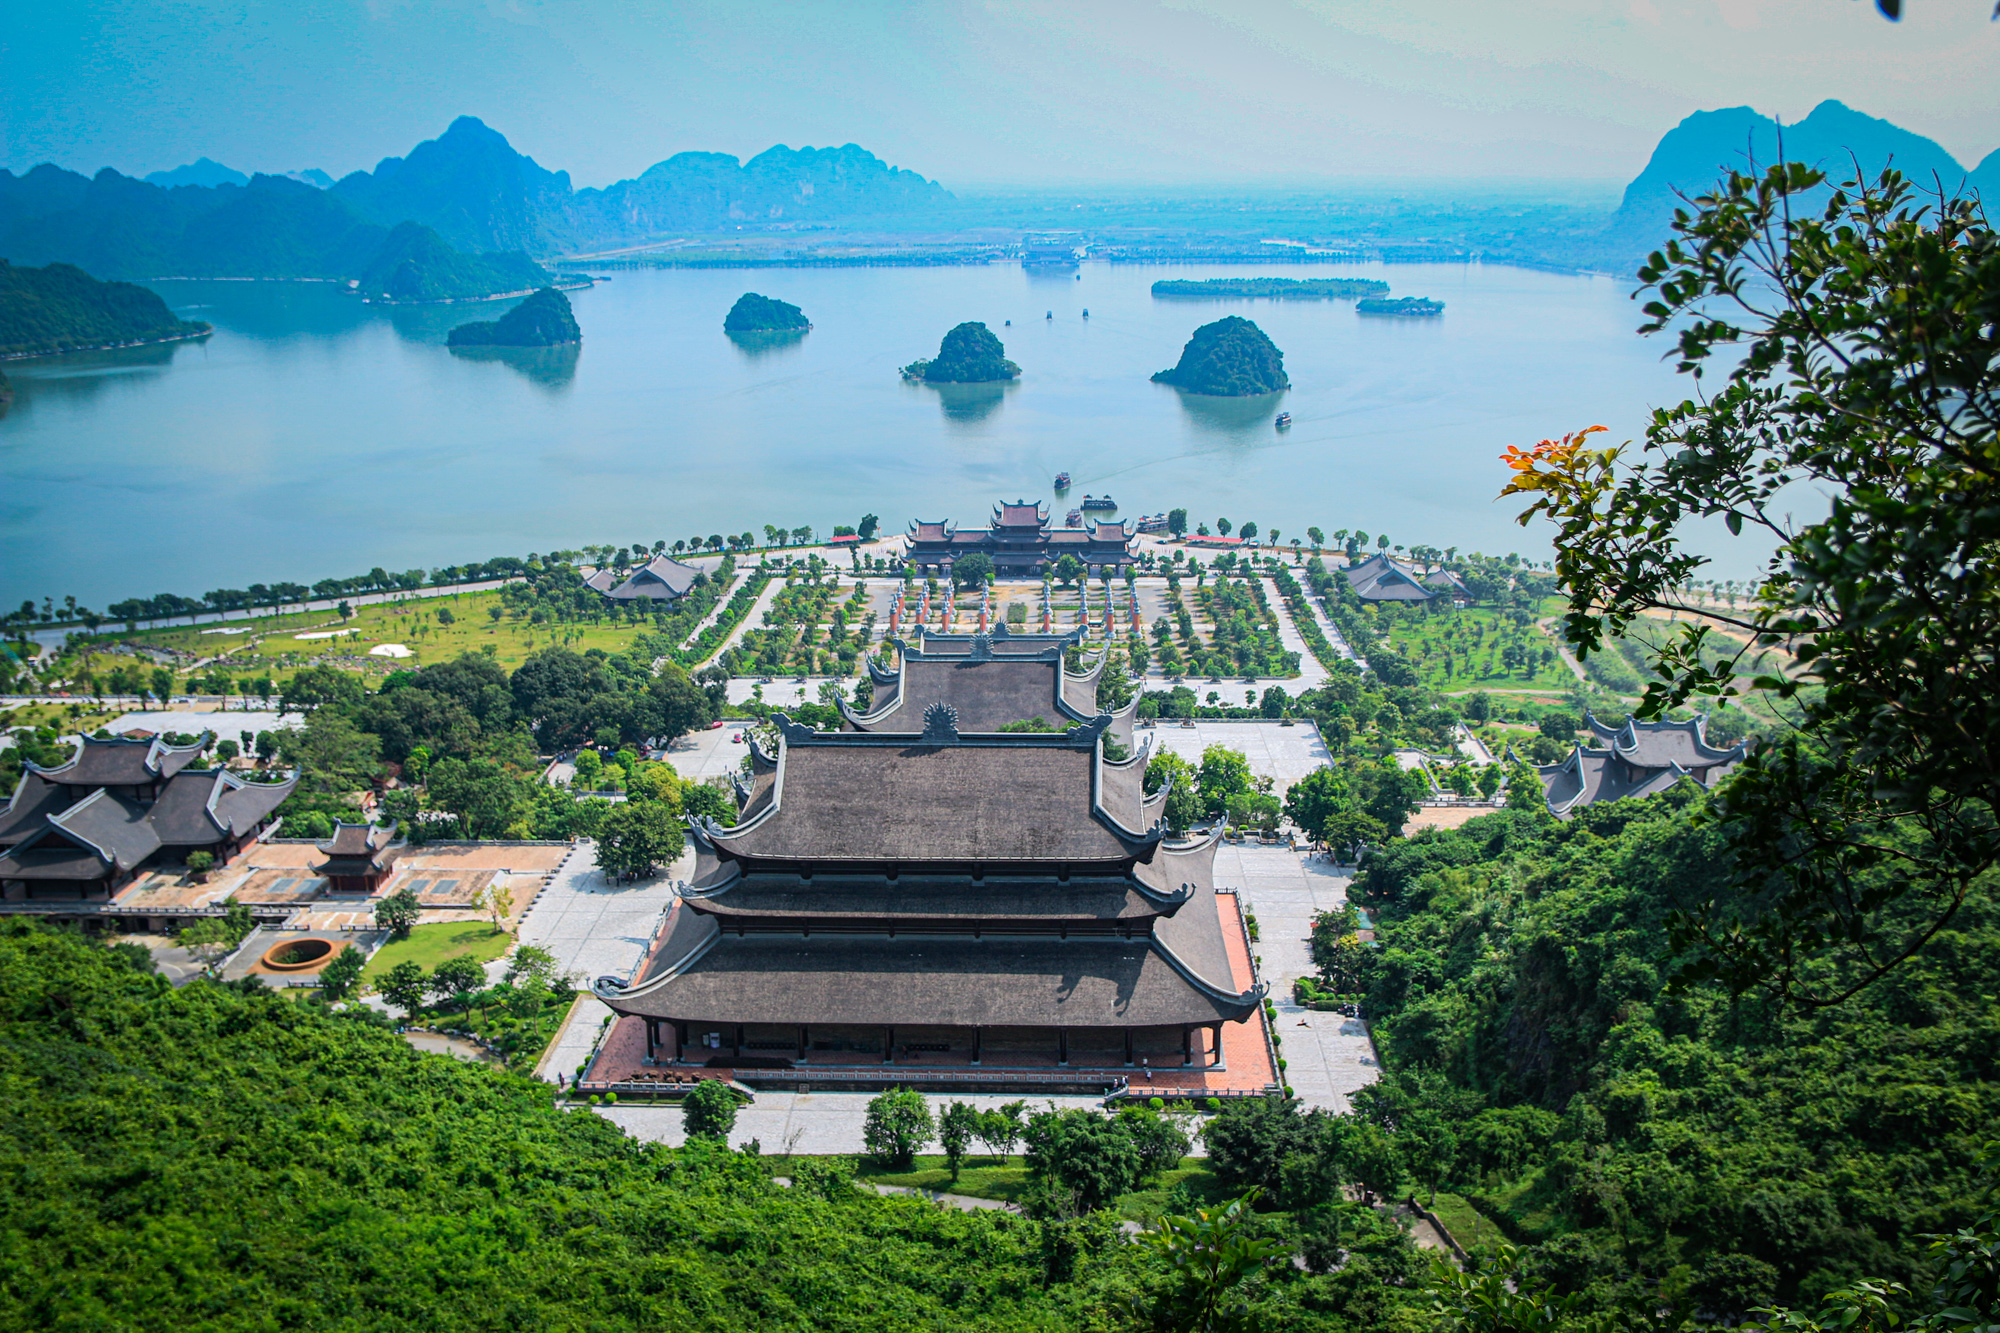 Ngôi chùa rộng gấp 10 lần quận Hoàn Kiếm, xây nửa thế kỷ mới xong - Ảnh 11.